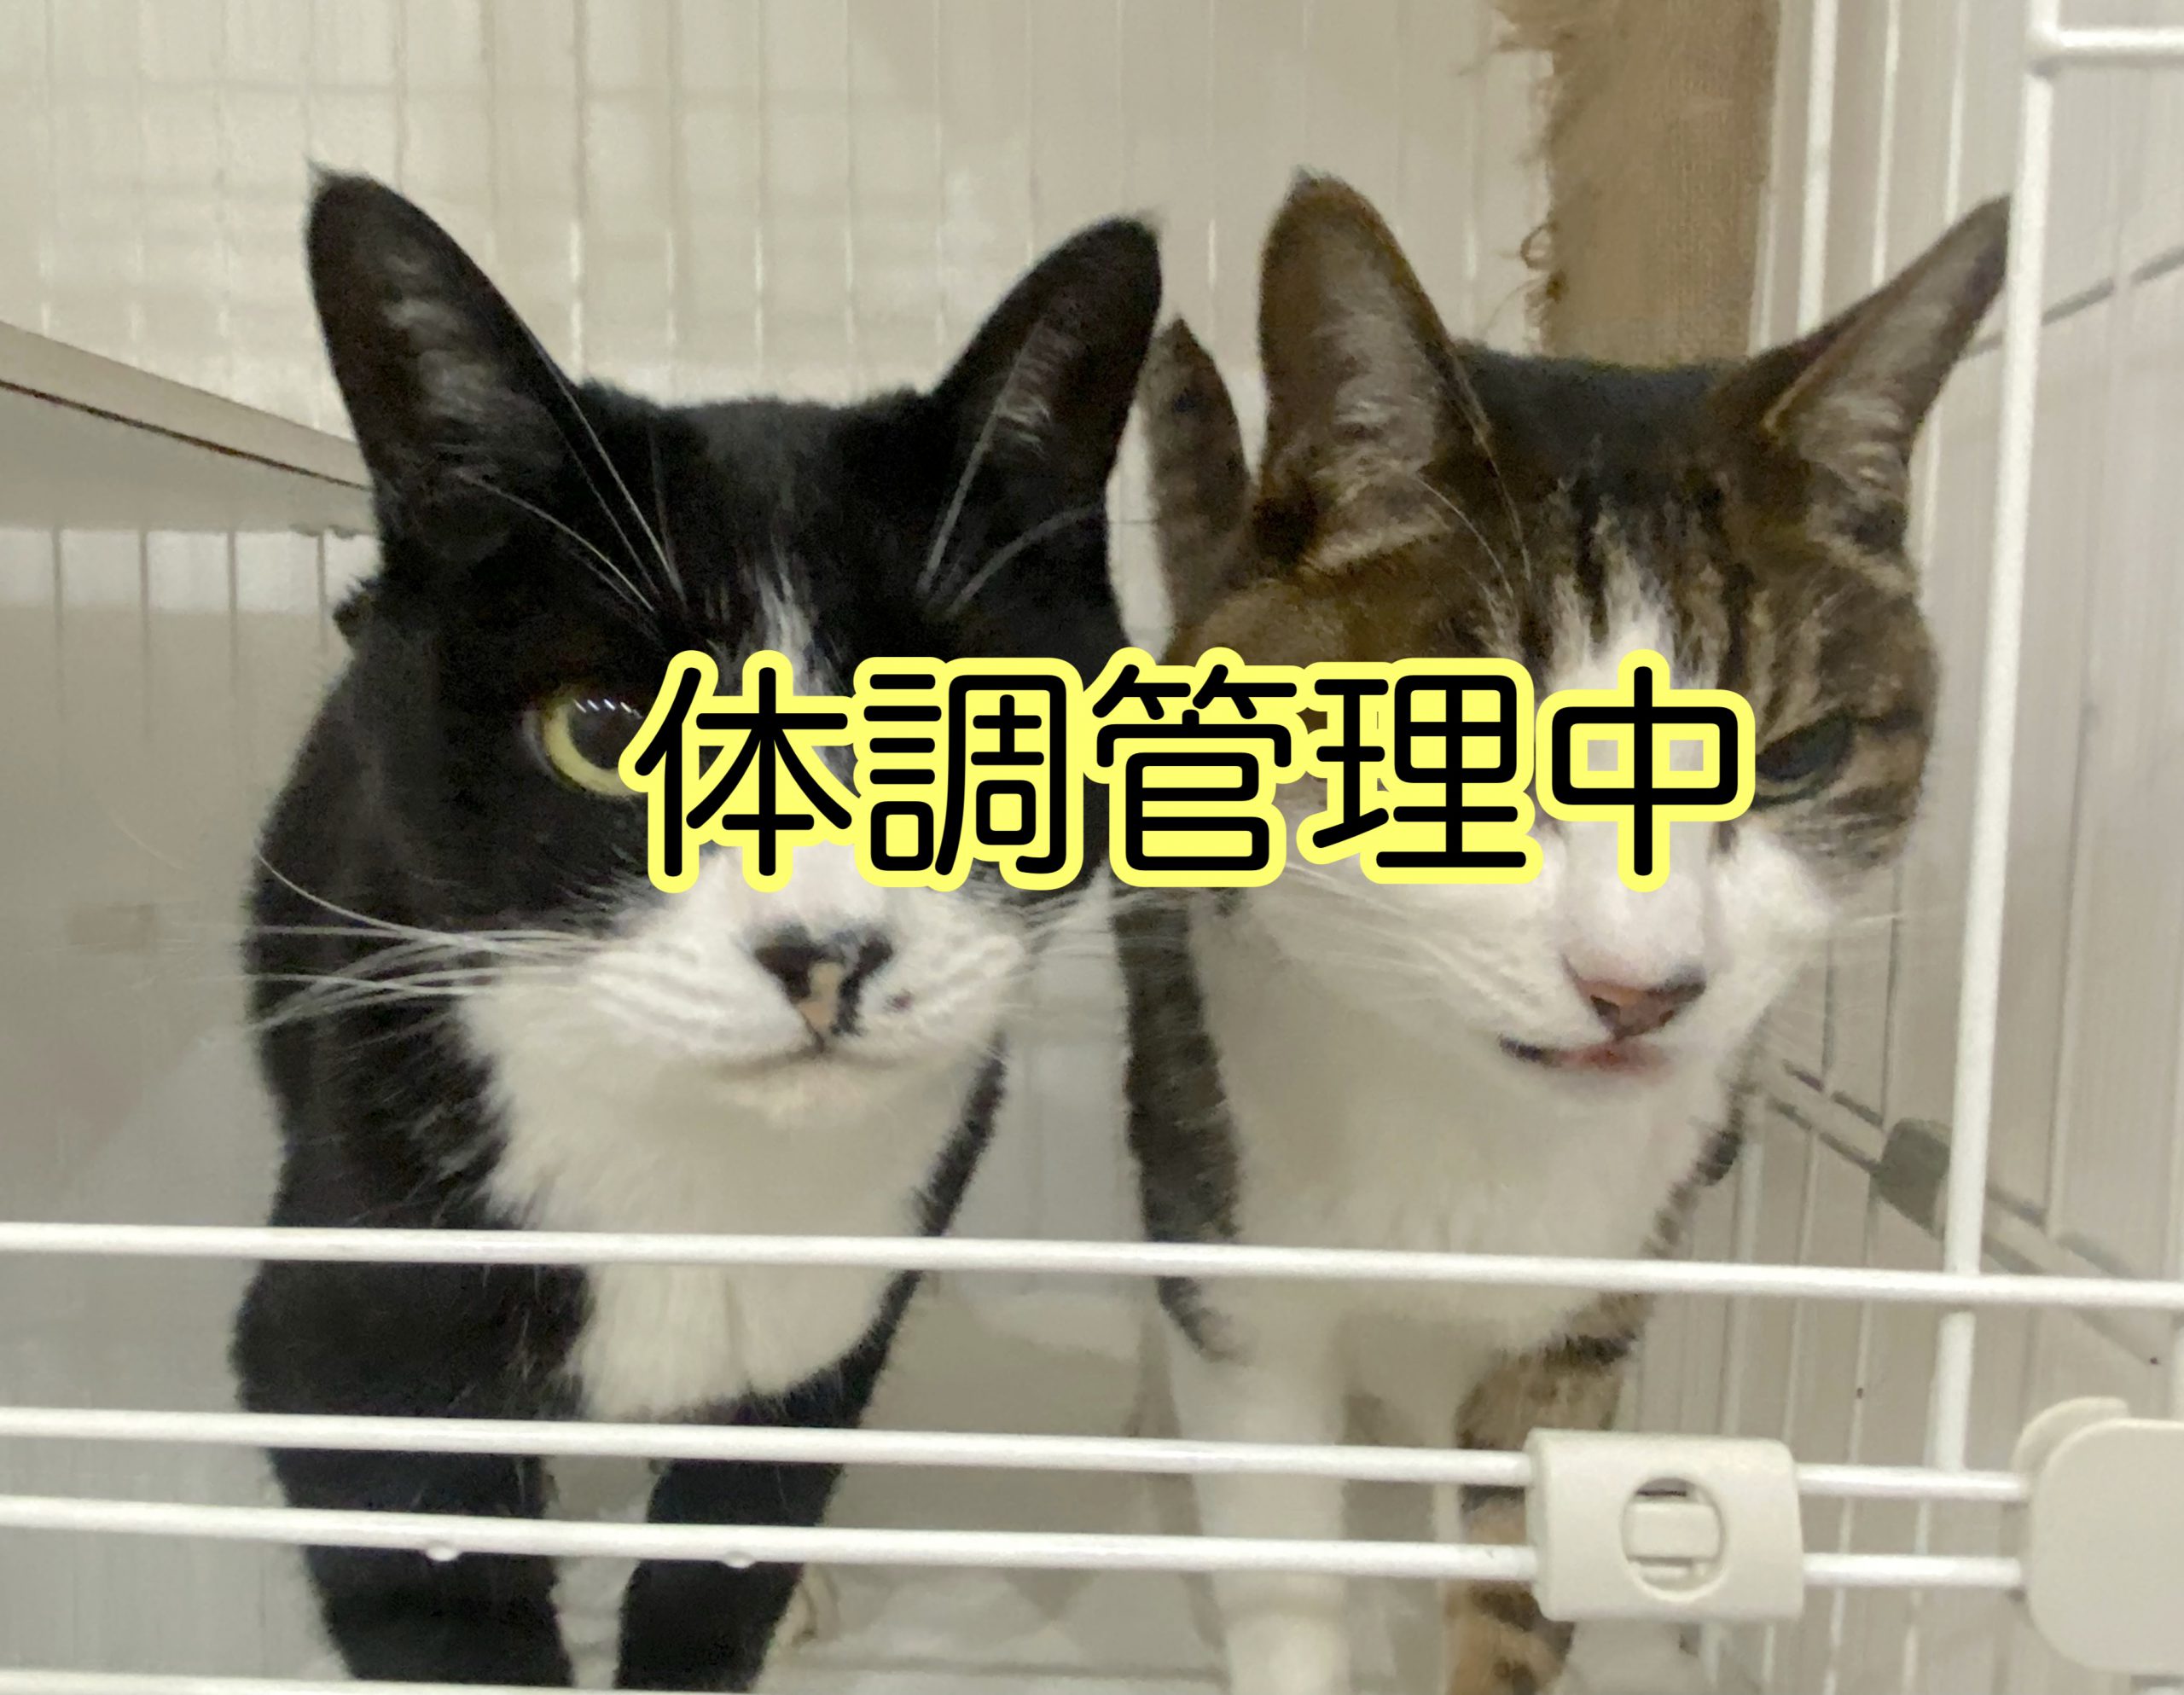 <ul>
<li>猫種：日本猫</li>
<li>名前（性別）：クロ(女の子)アル(男の子)</li>
<li>年齢：2015年2月頃生まれ</li>
<li>保護経緯：飼い主が高齢になり逝去され、家族も引越のため飼育困難</li>
</ul>
